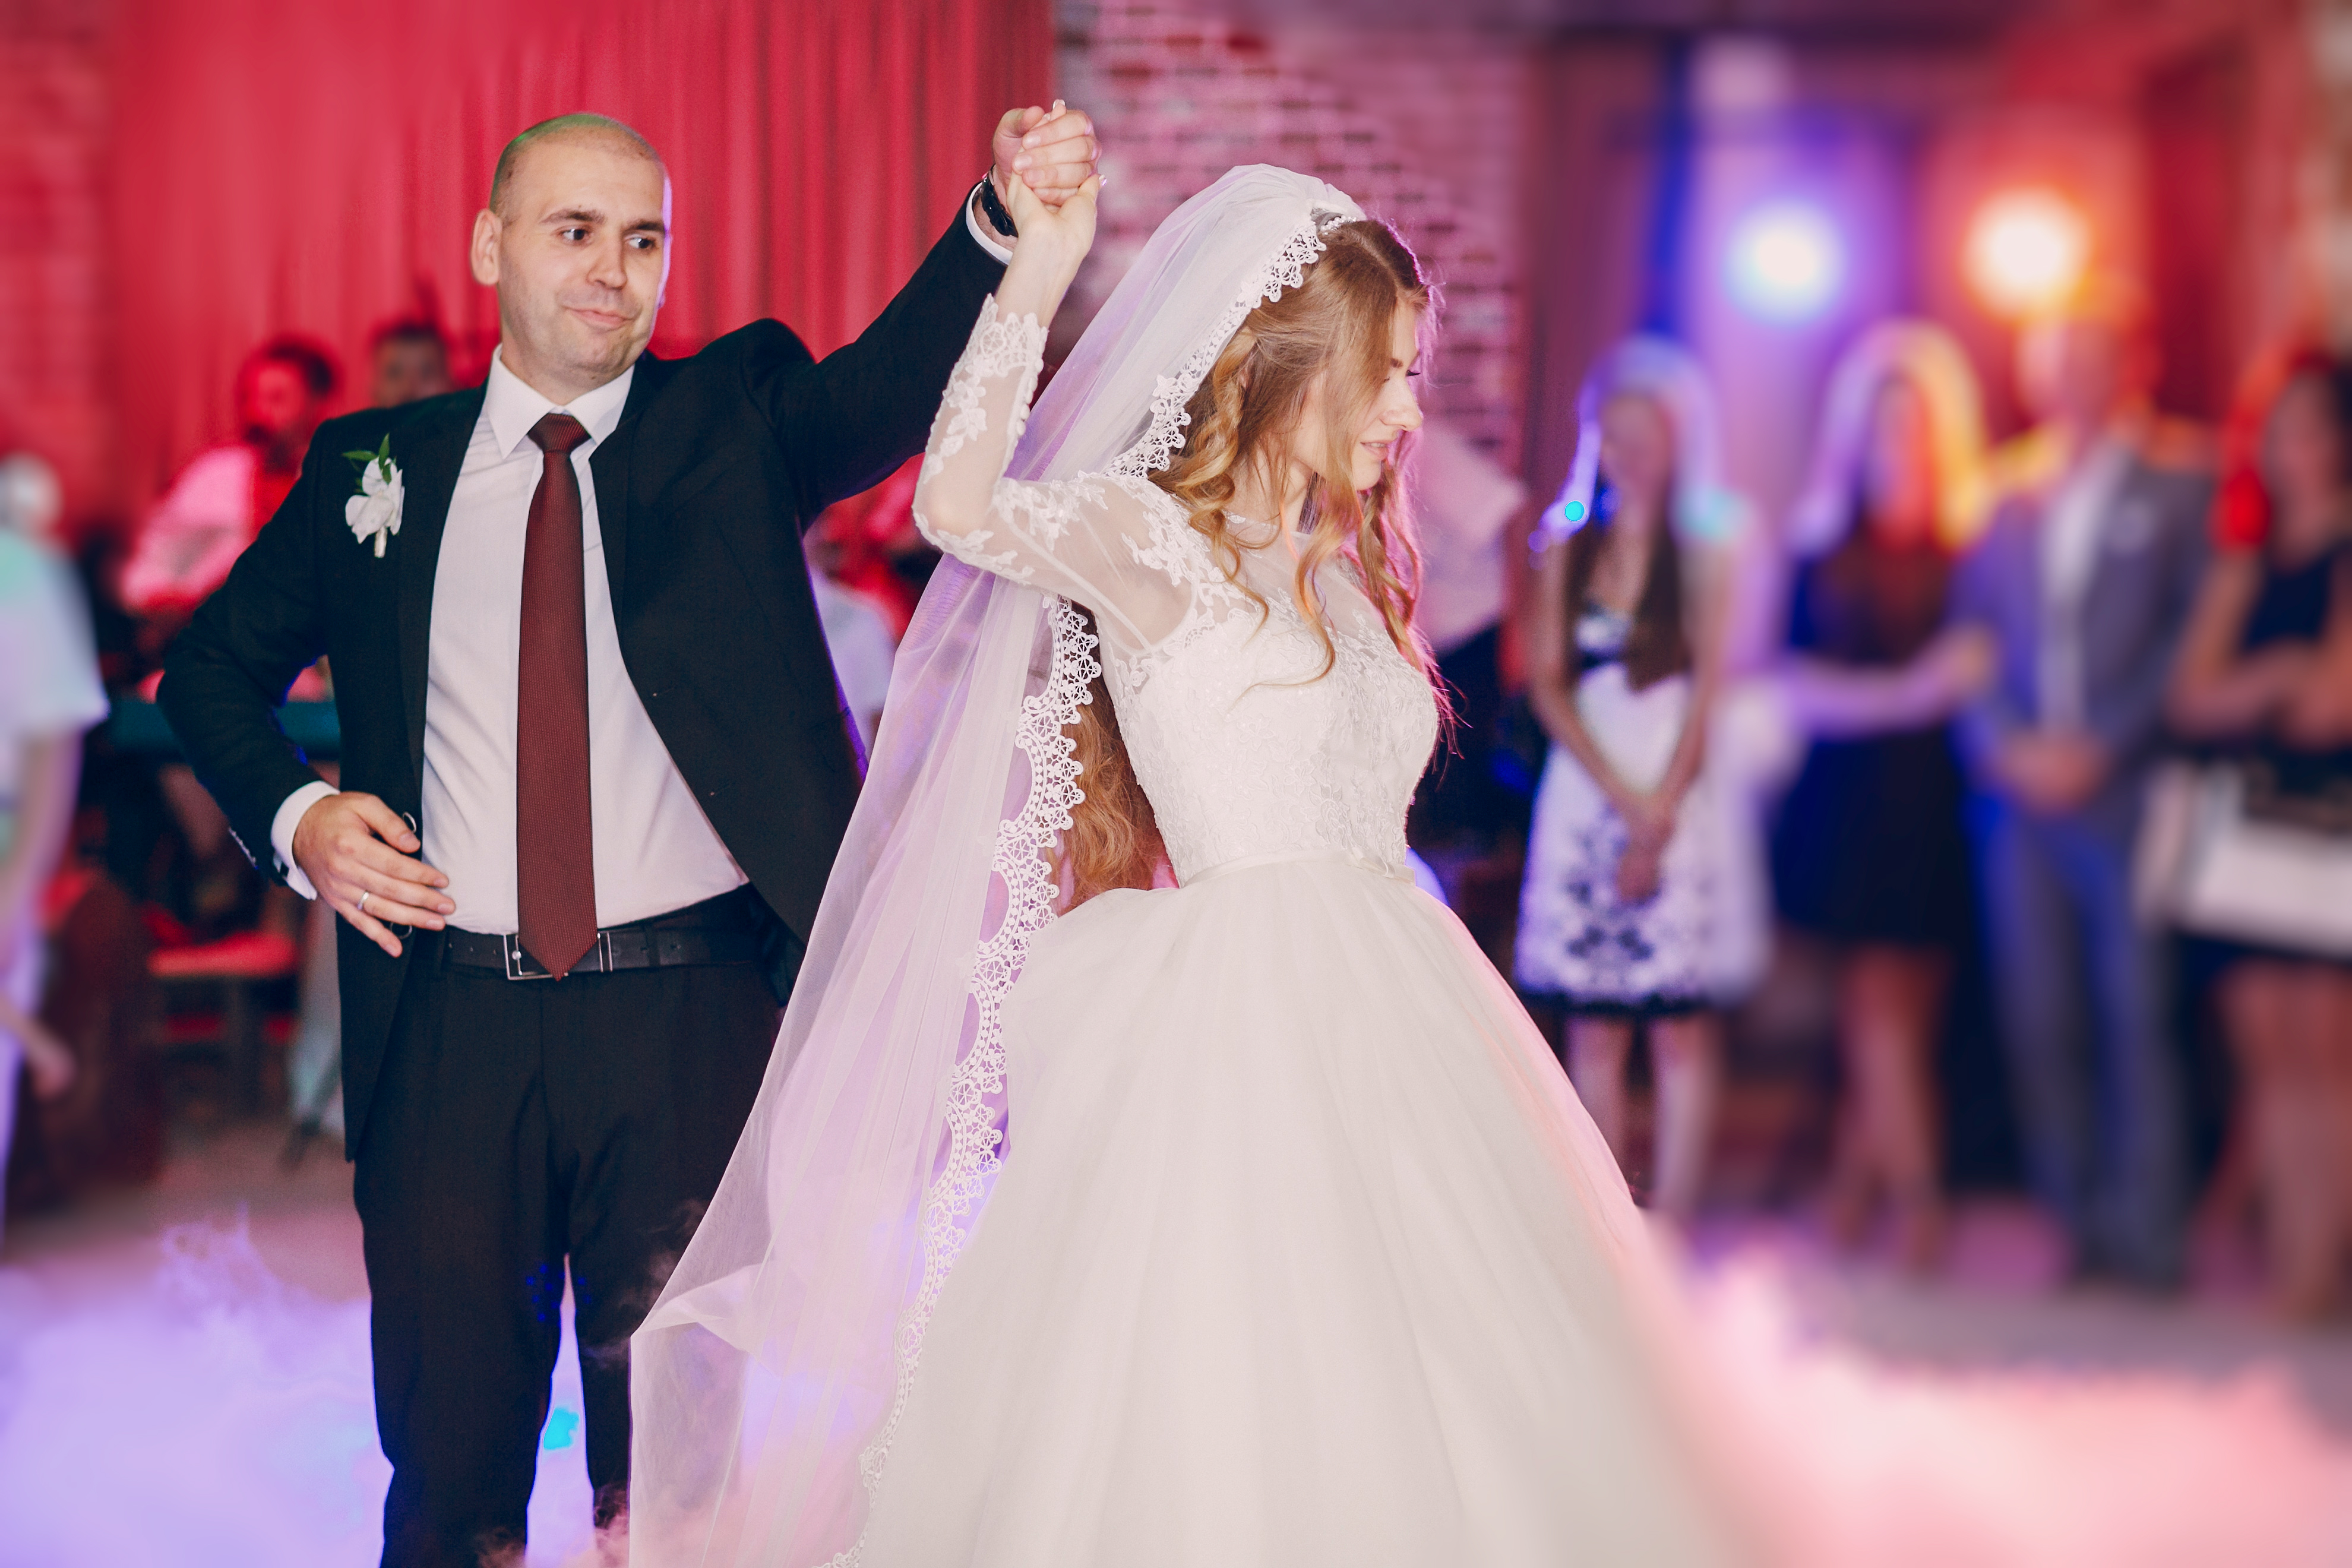 La mariée et le marié dansent | Source : Freepik